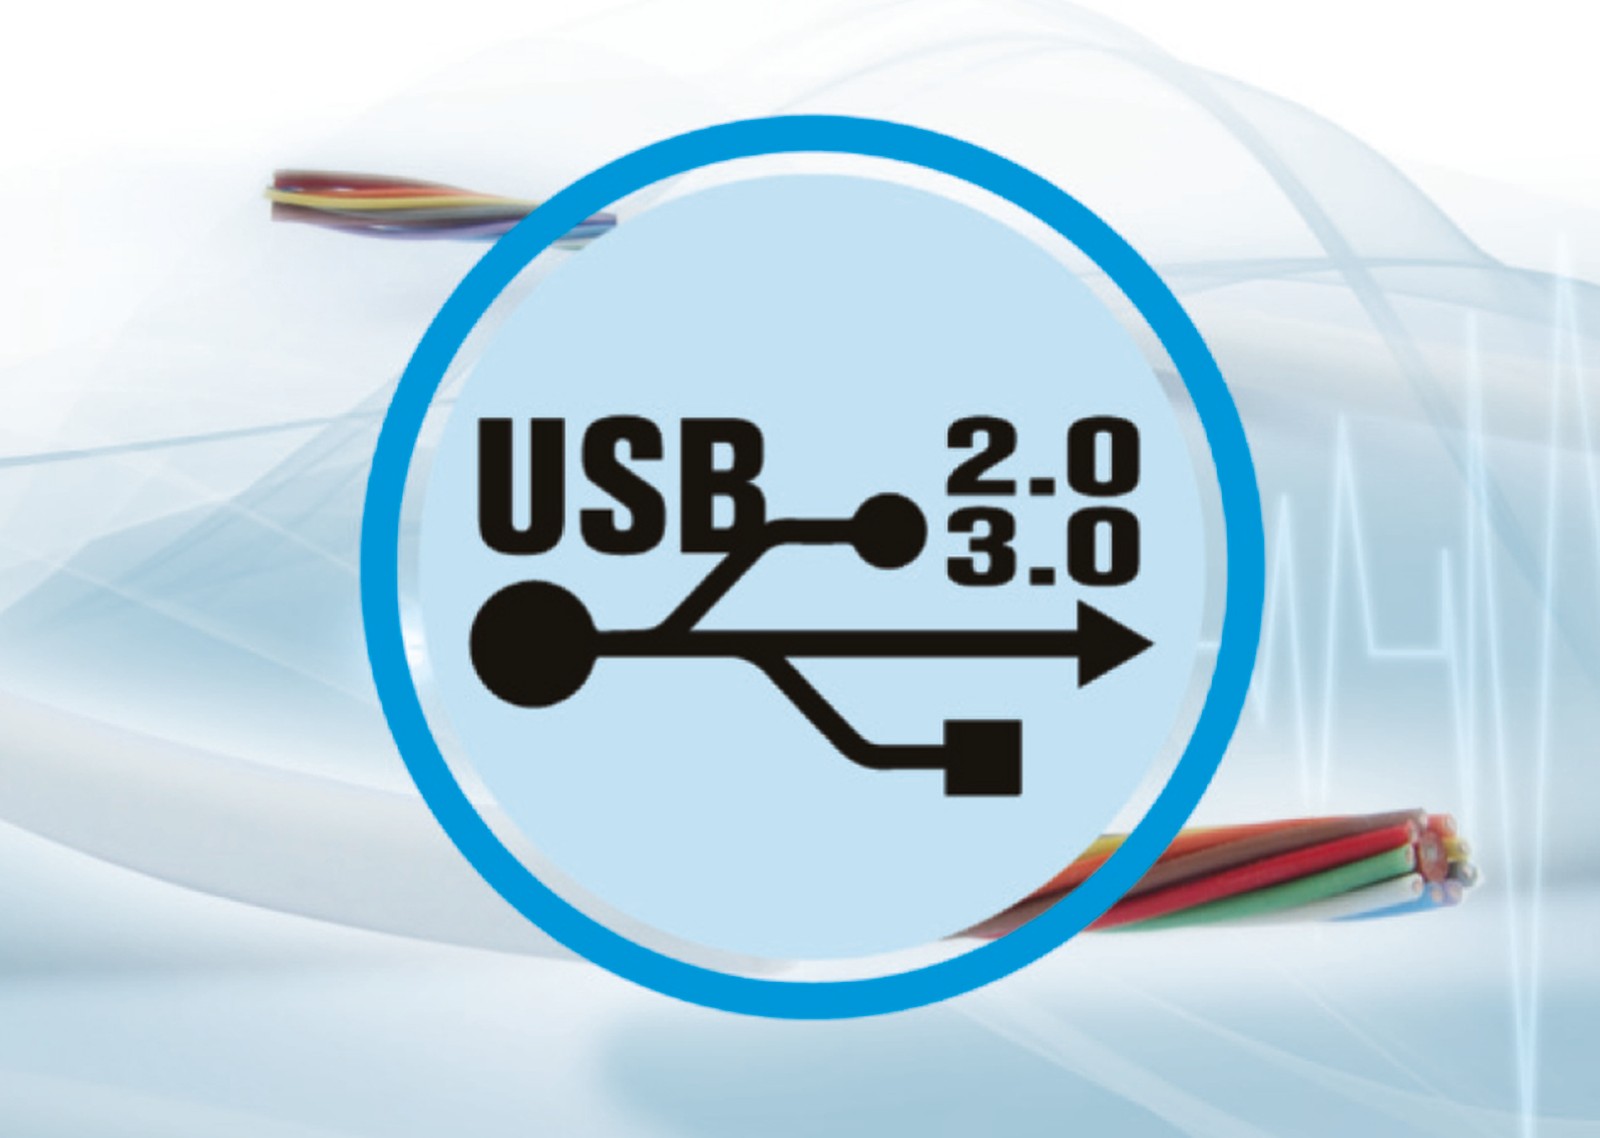 Die "Medical-Grade" USB 3.0 Leitung verfügt unter anderem über ein geringes Eigengewicht. Sie wurde bereits serienreif entwickelt und produziert. 